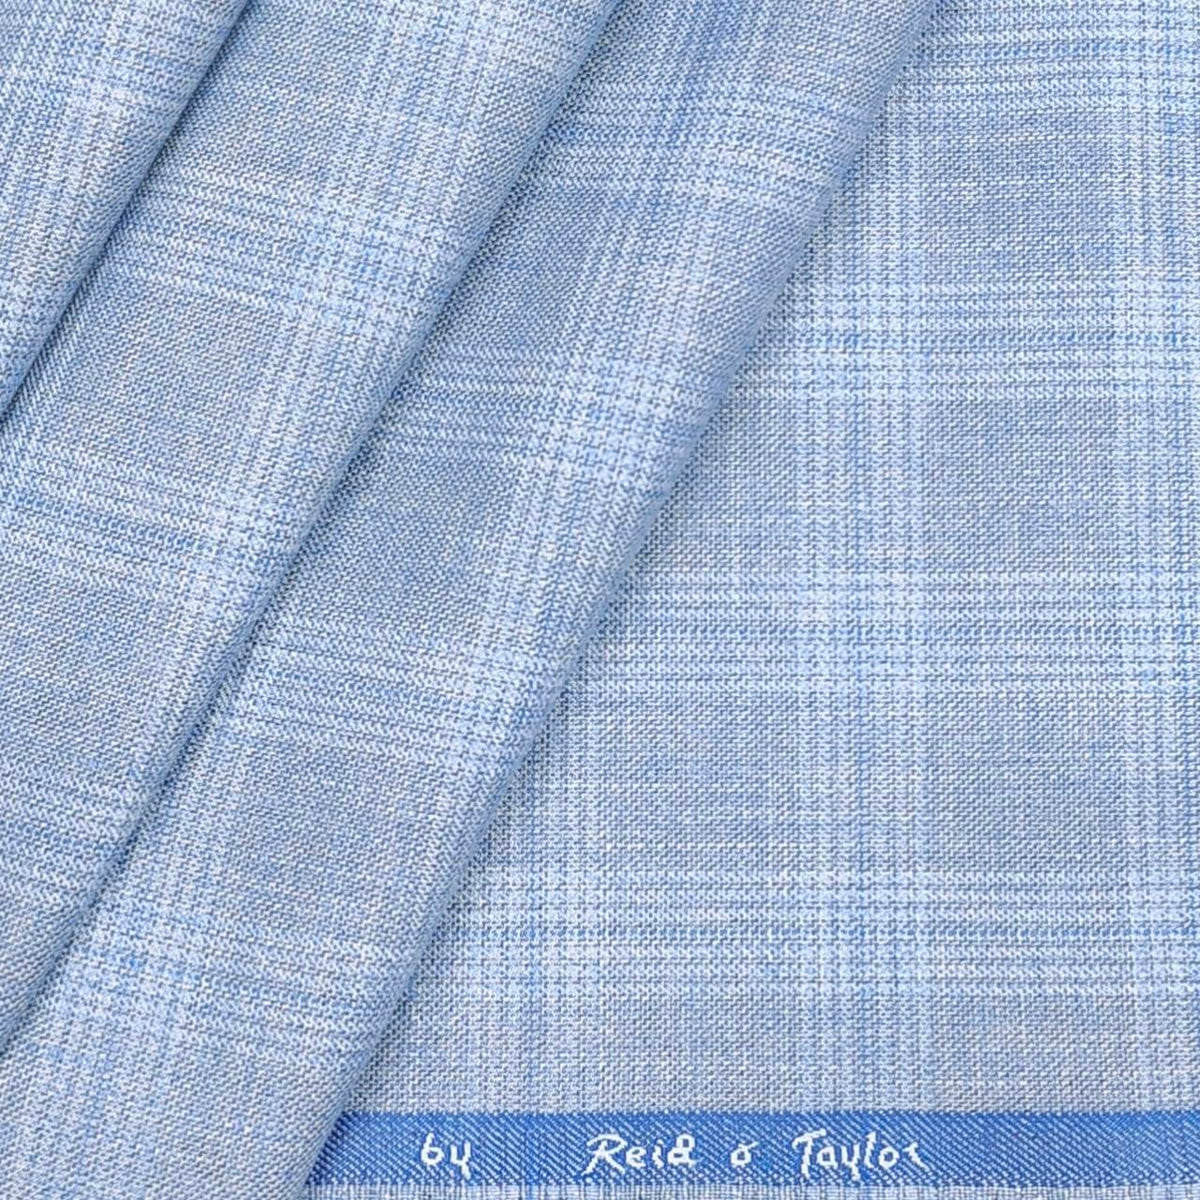 Reid n Taylor Men's Premium check unstitched Pant Fabric (sky blue)